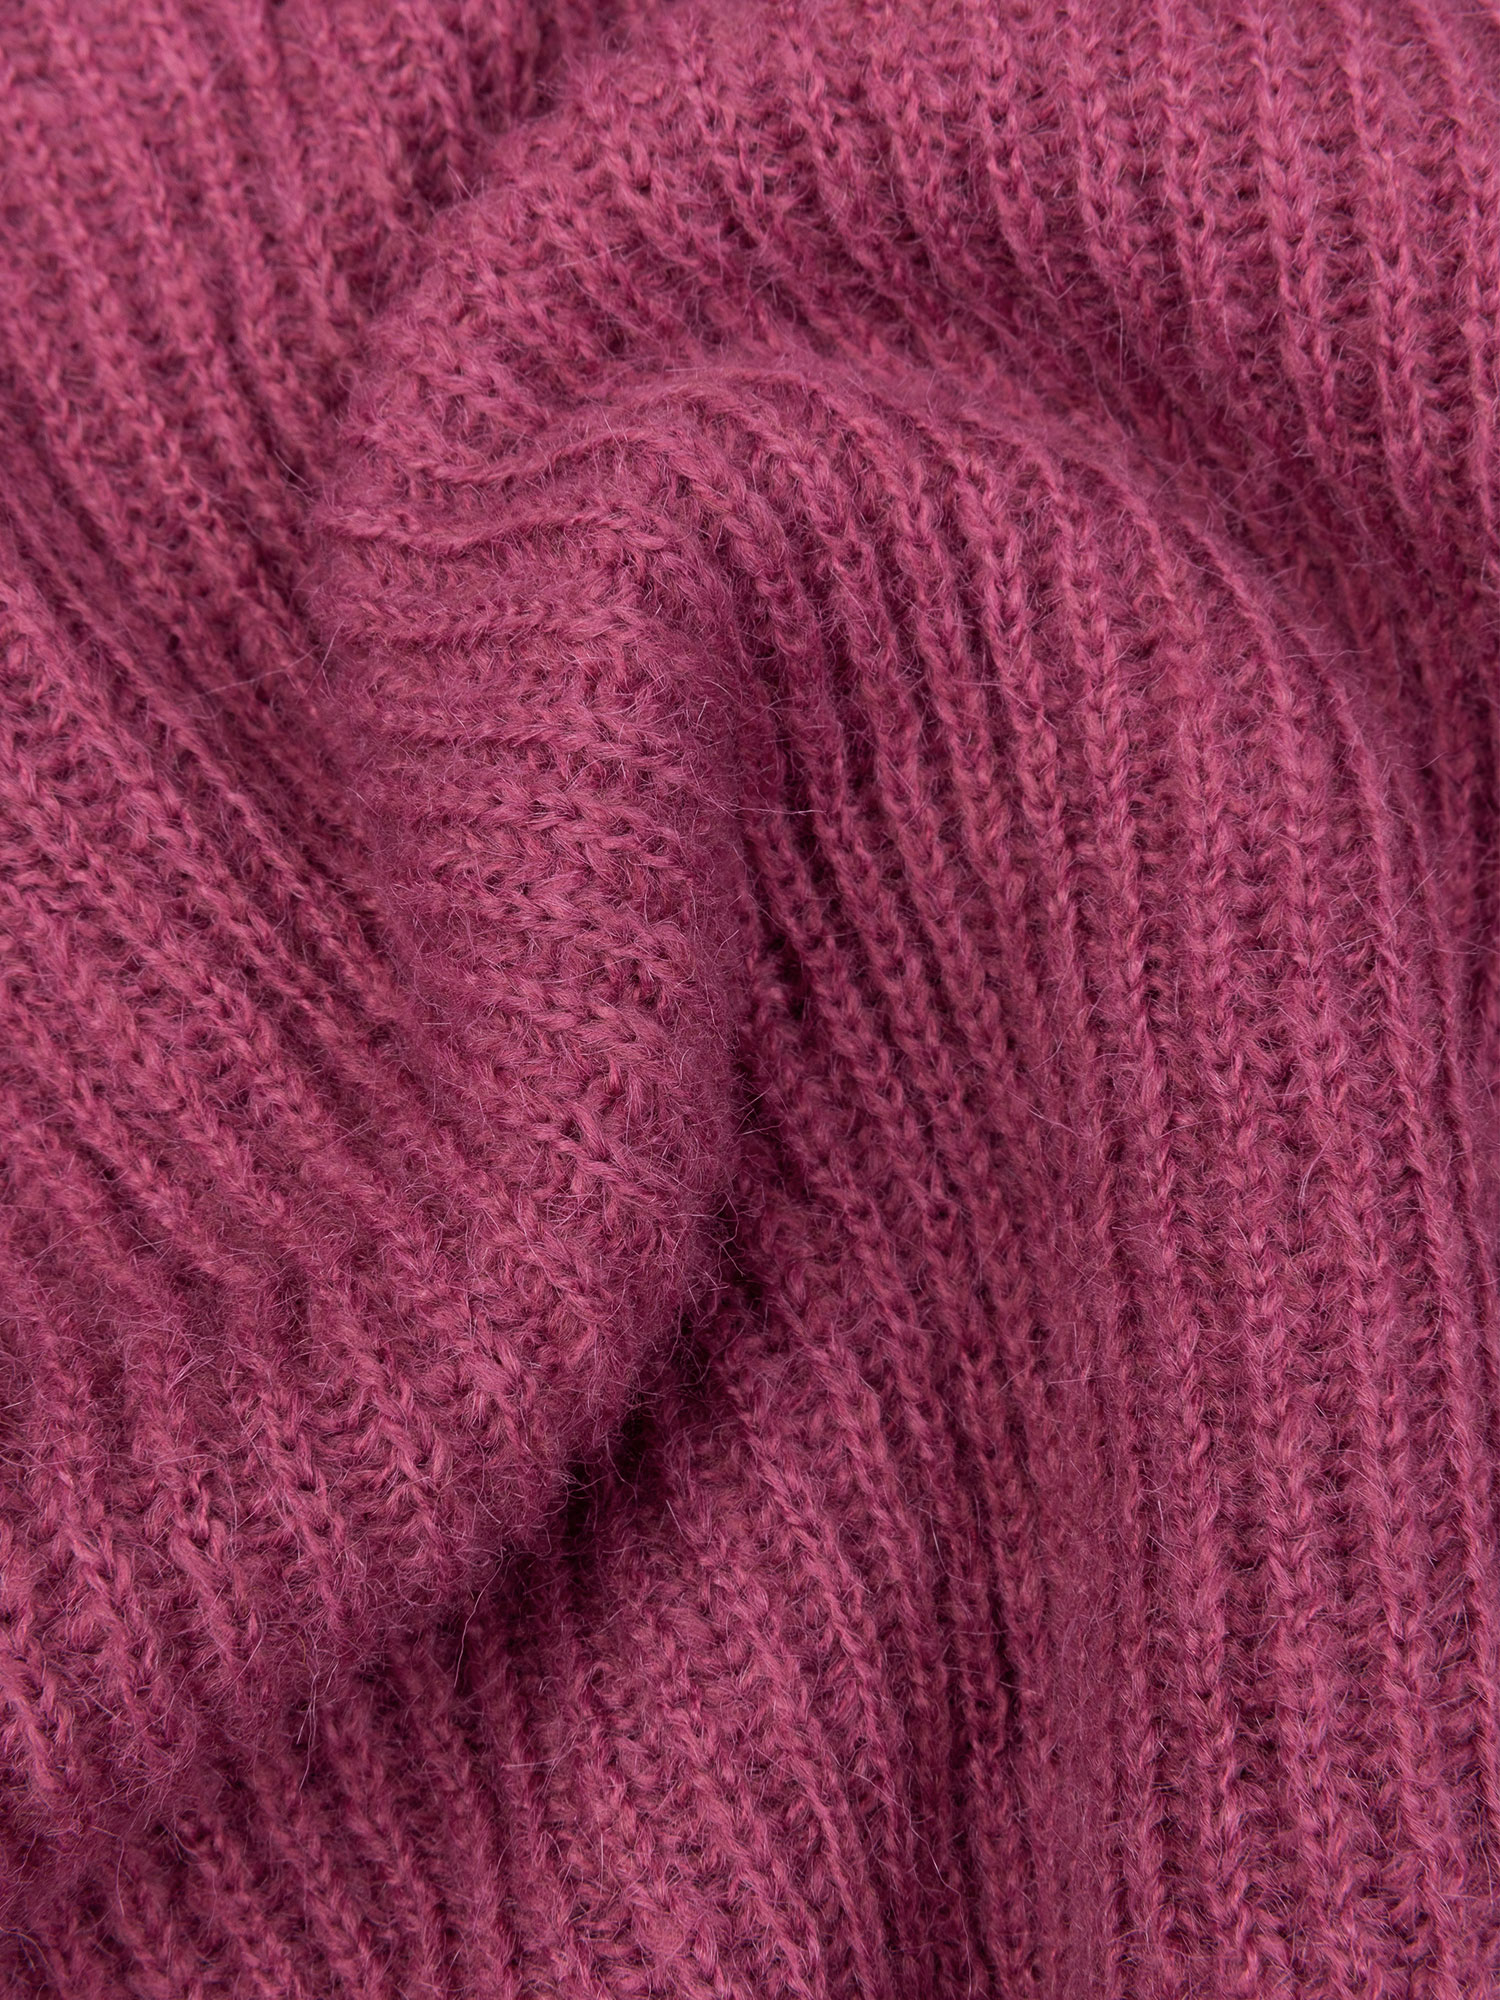 Knitted Sweater Karlijn (oud roze)